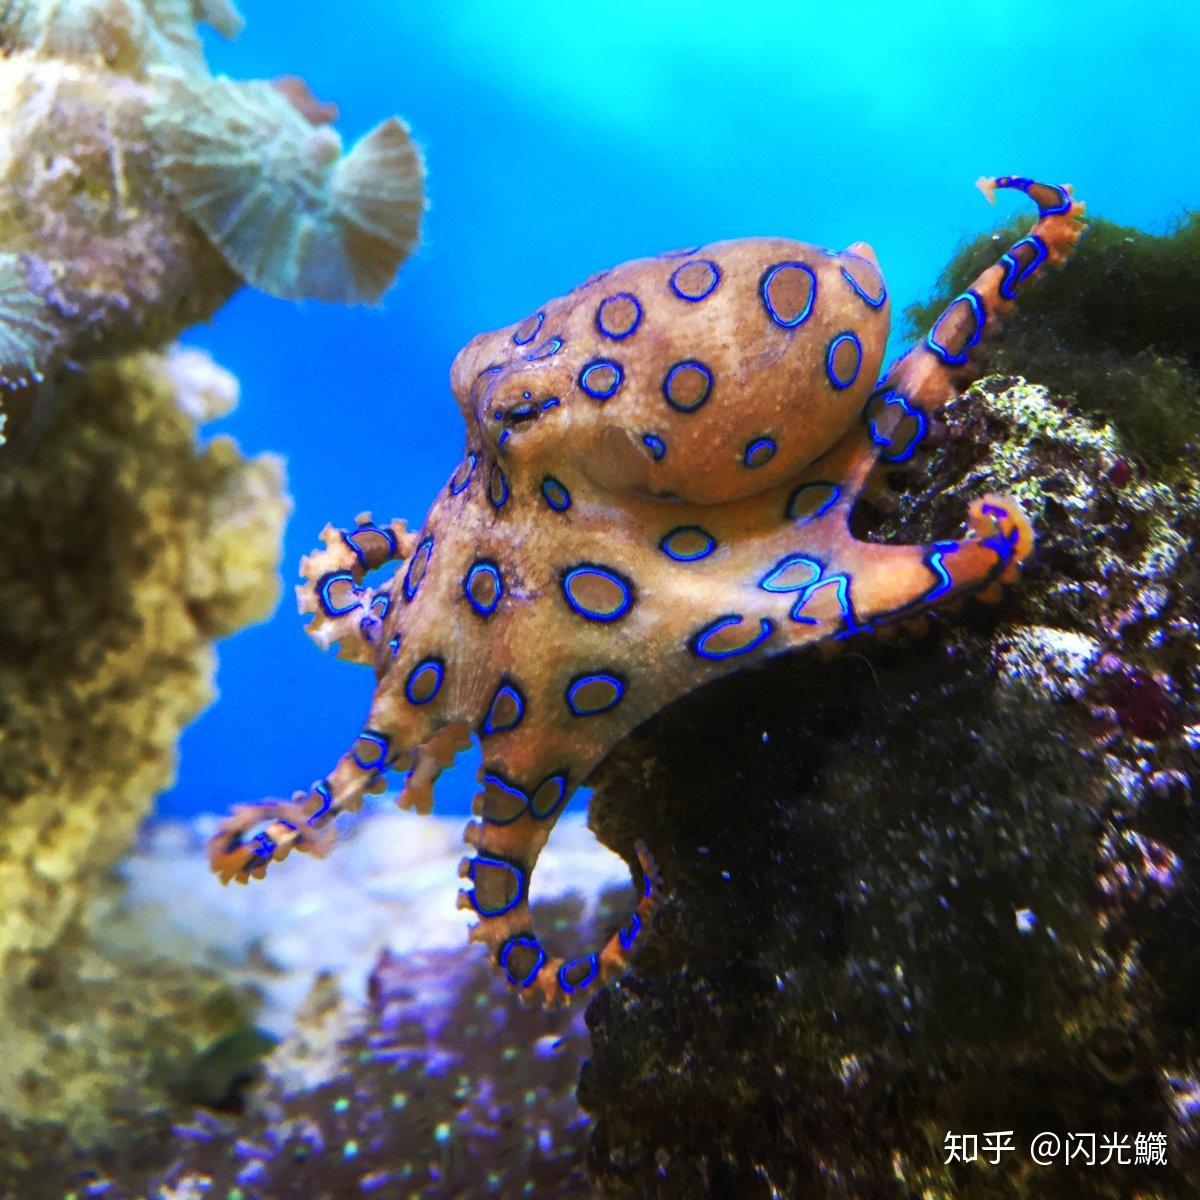 蓝环章鱼:毒物还是宠物?